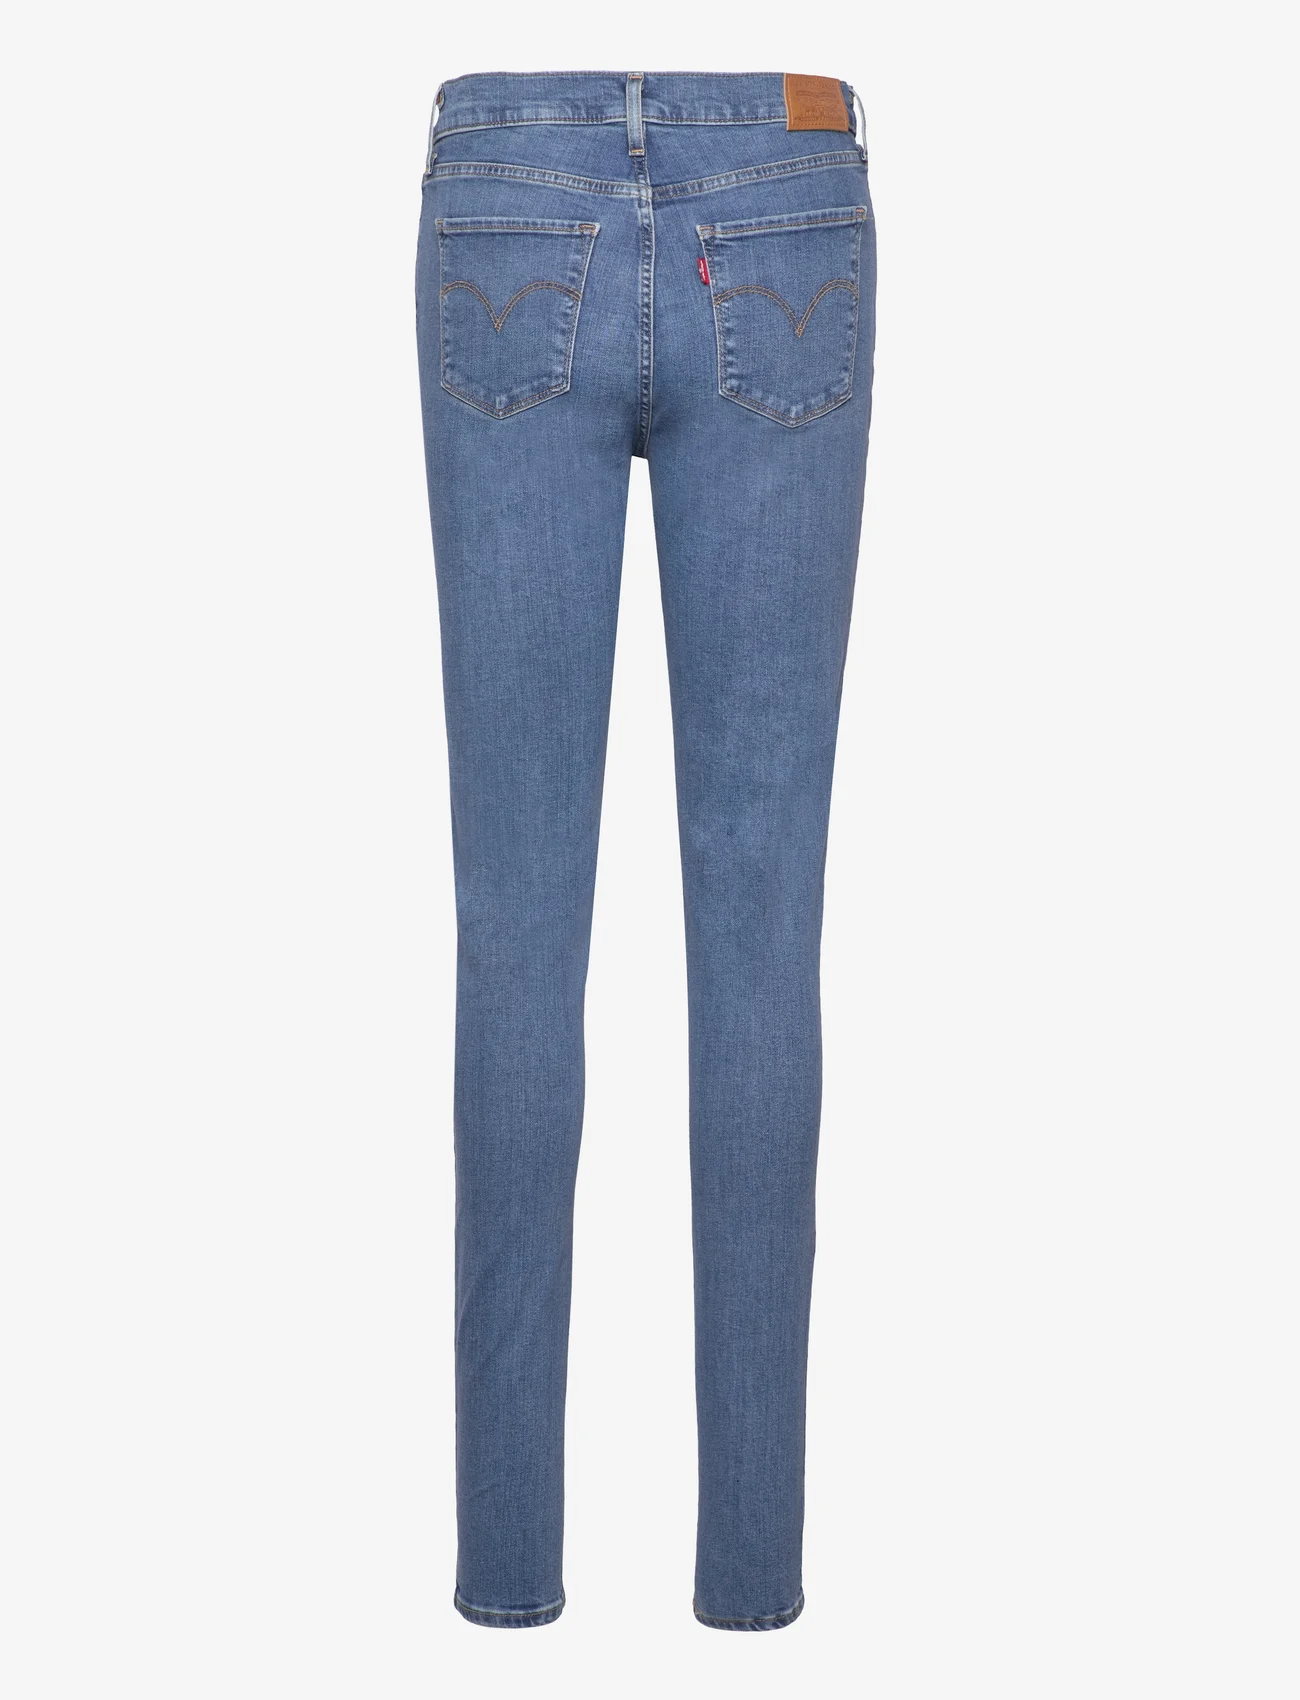 LEVI´S Women - 720 HIRISE SUPER SKINNY Z0736 - skinny jeans - med indigo - worn in - 1